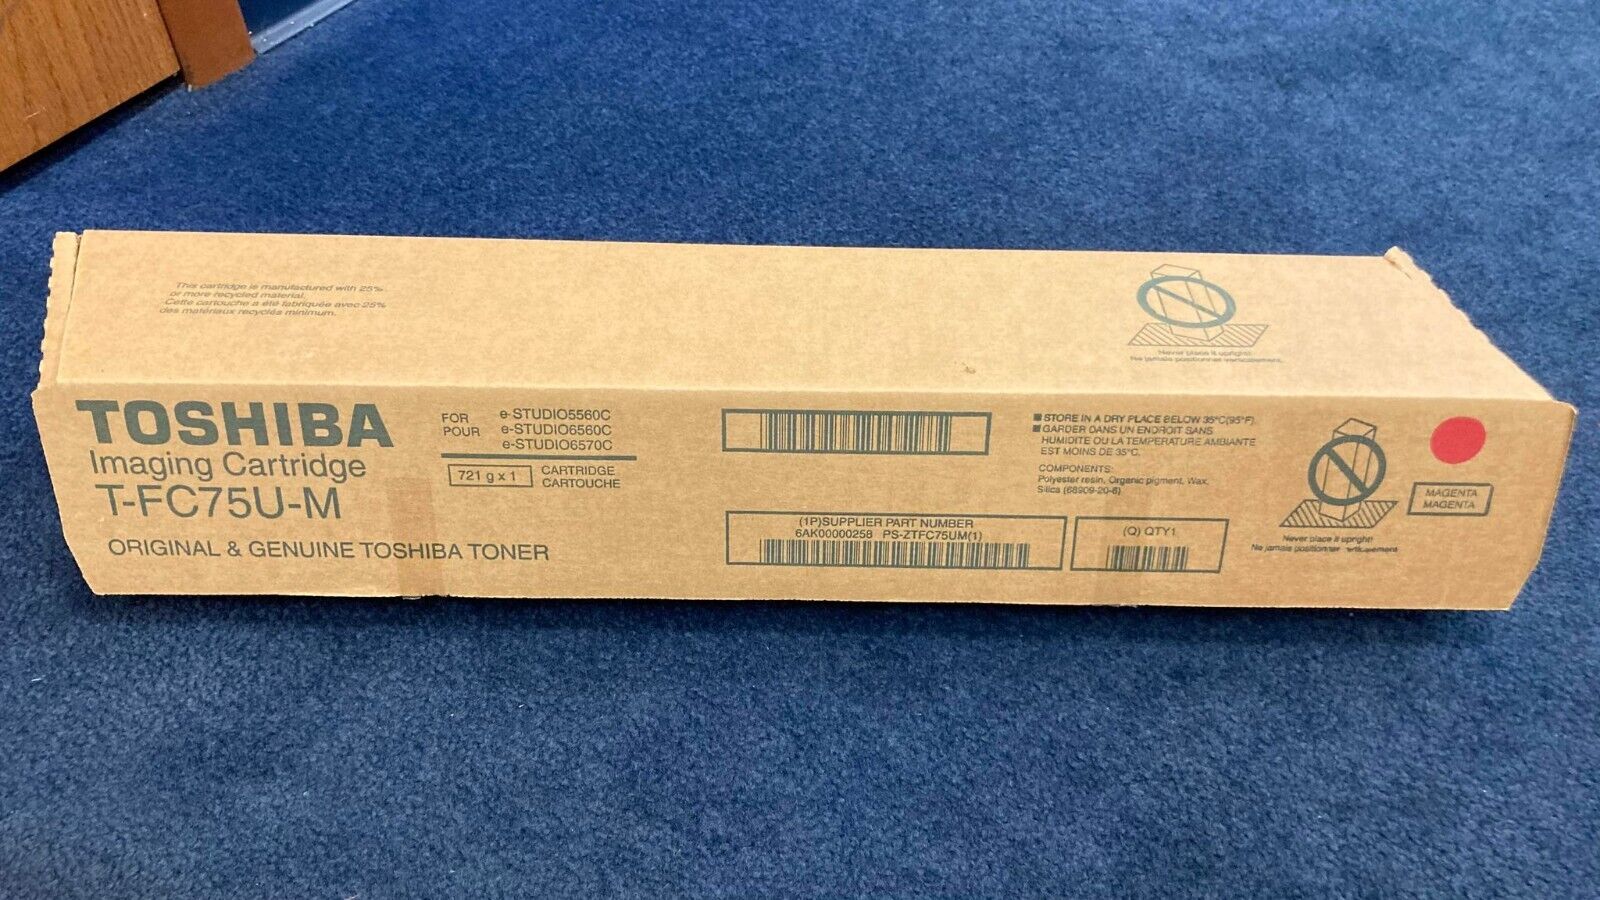 USED?? Toshiba T-FC50U-M Magenta Toner Cartridge for e-STUDIO 5560C/6560C/6570C